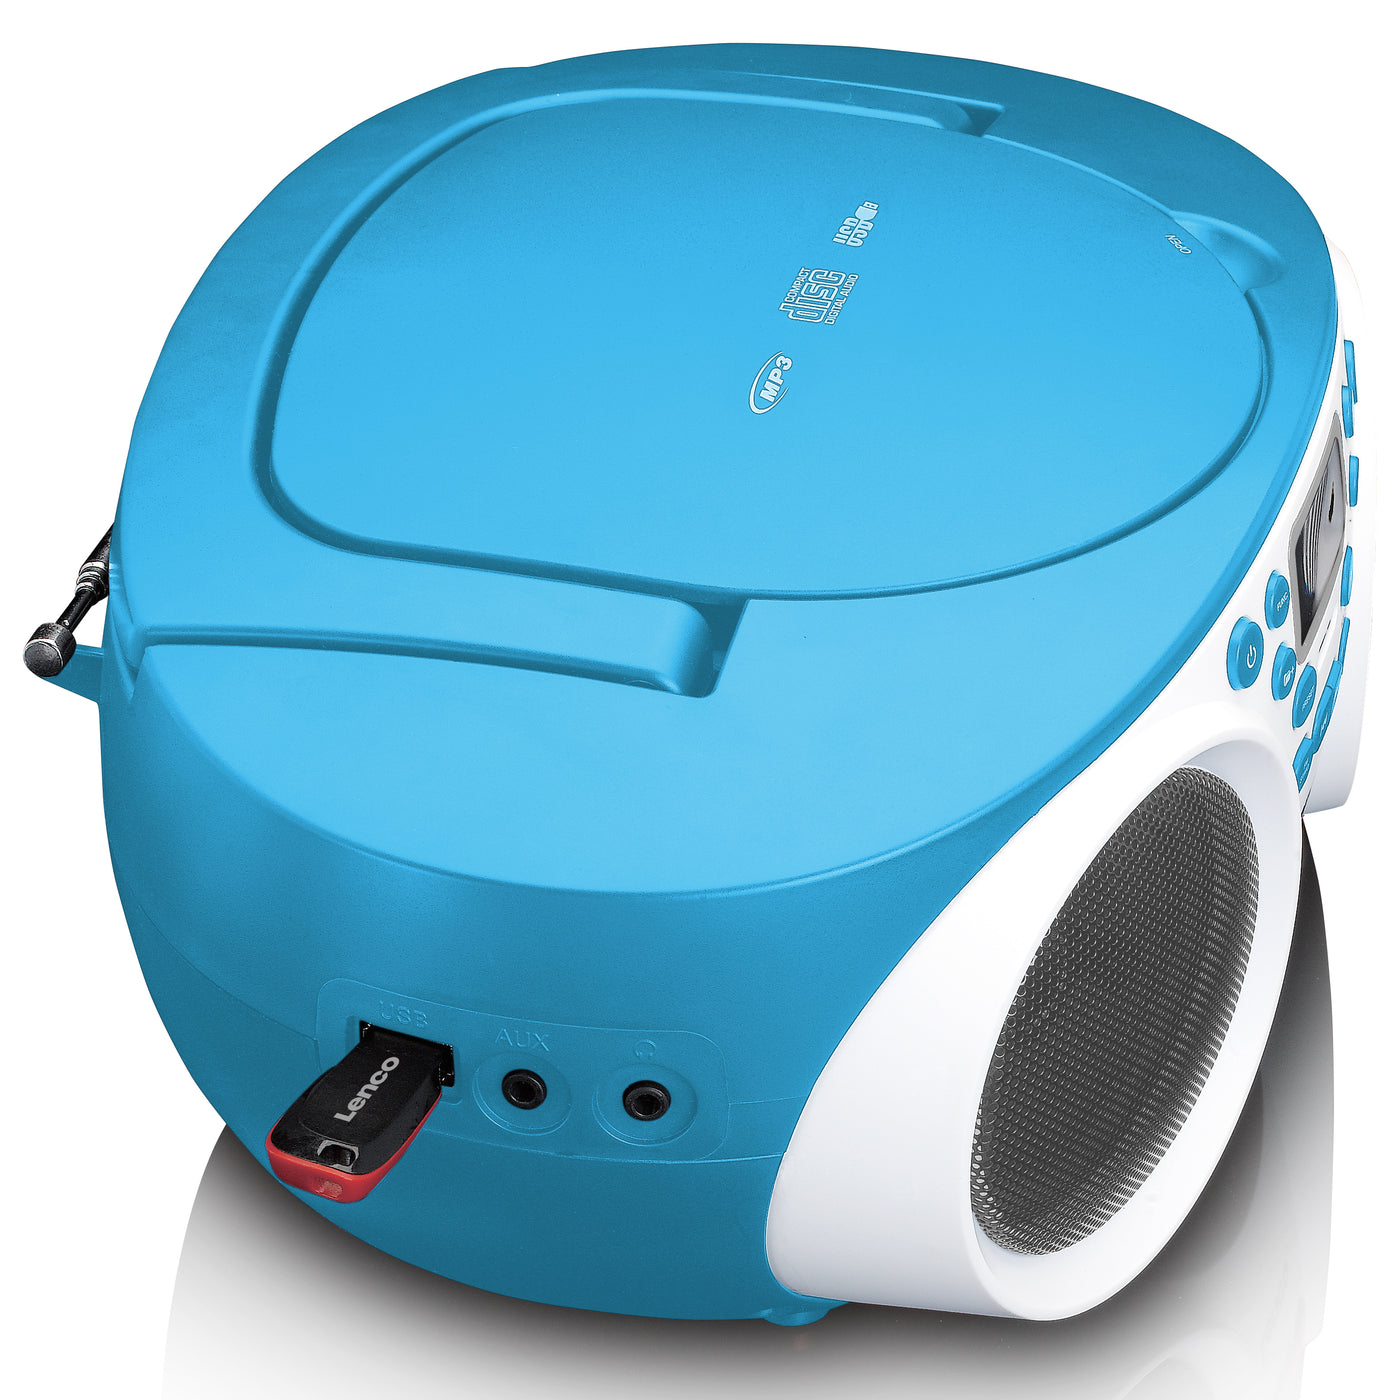 Lenco SCD-550BU - Radio FM et lecteur CD/MP3/USB/Bluetooth® portable avec  éclairage LED - Bleu